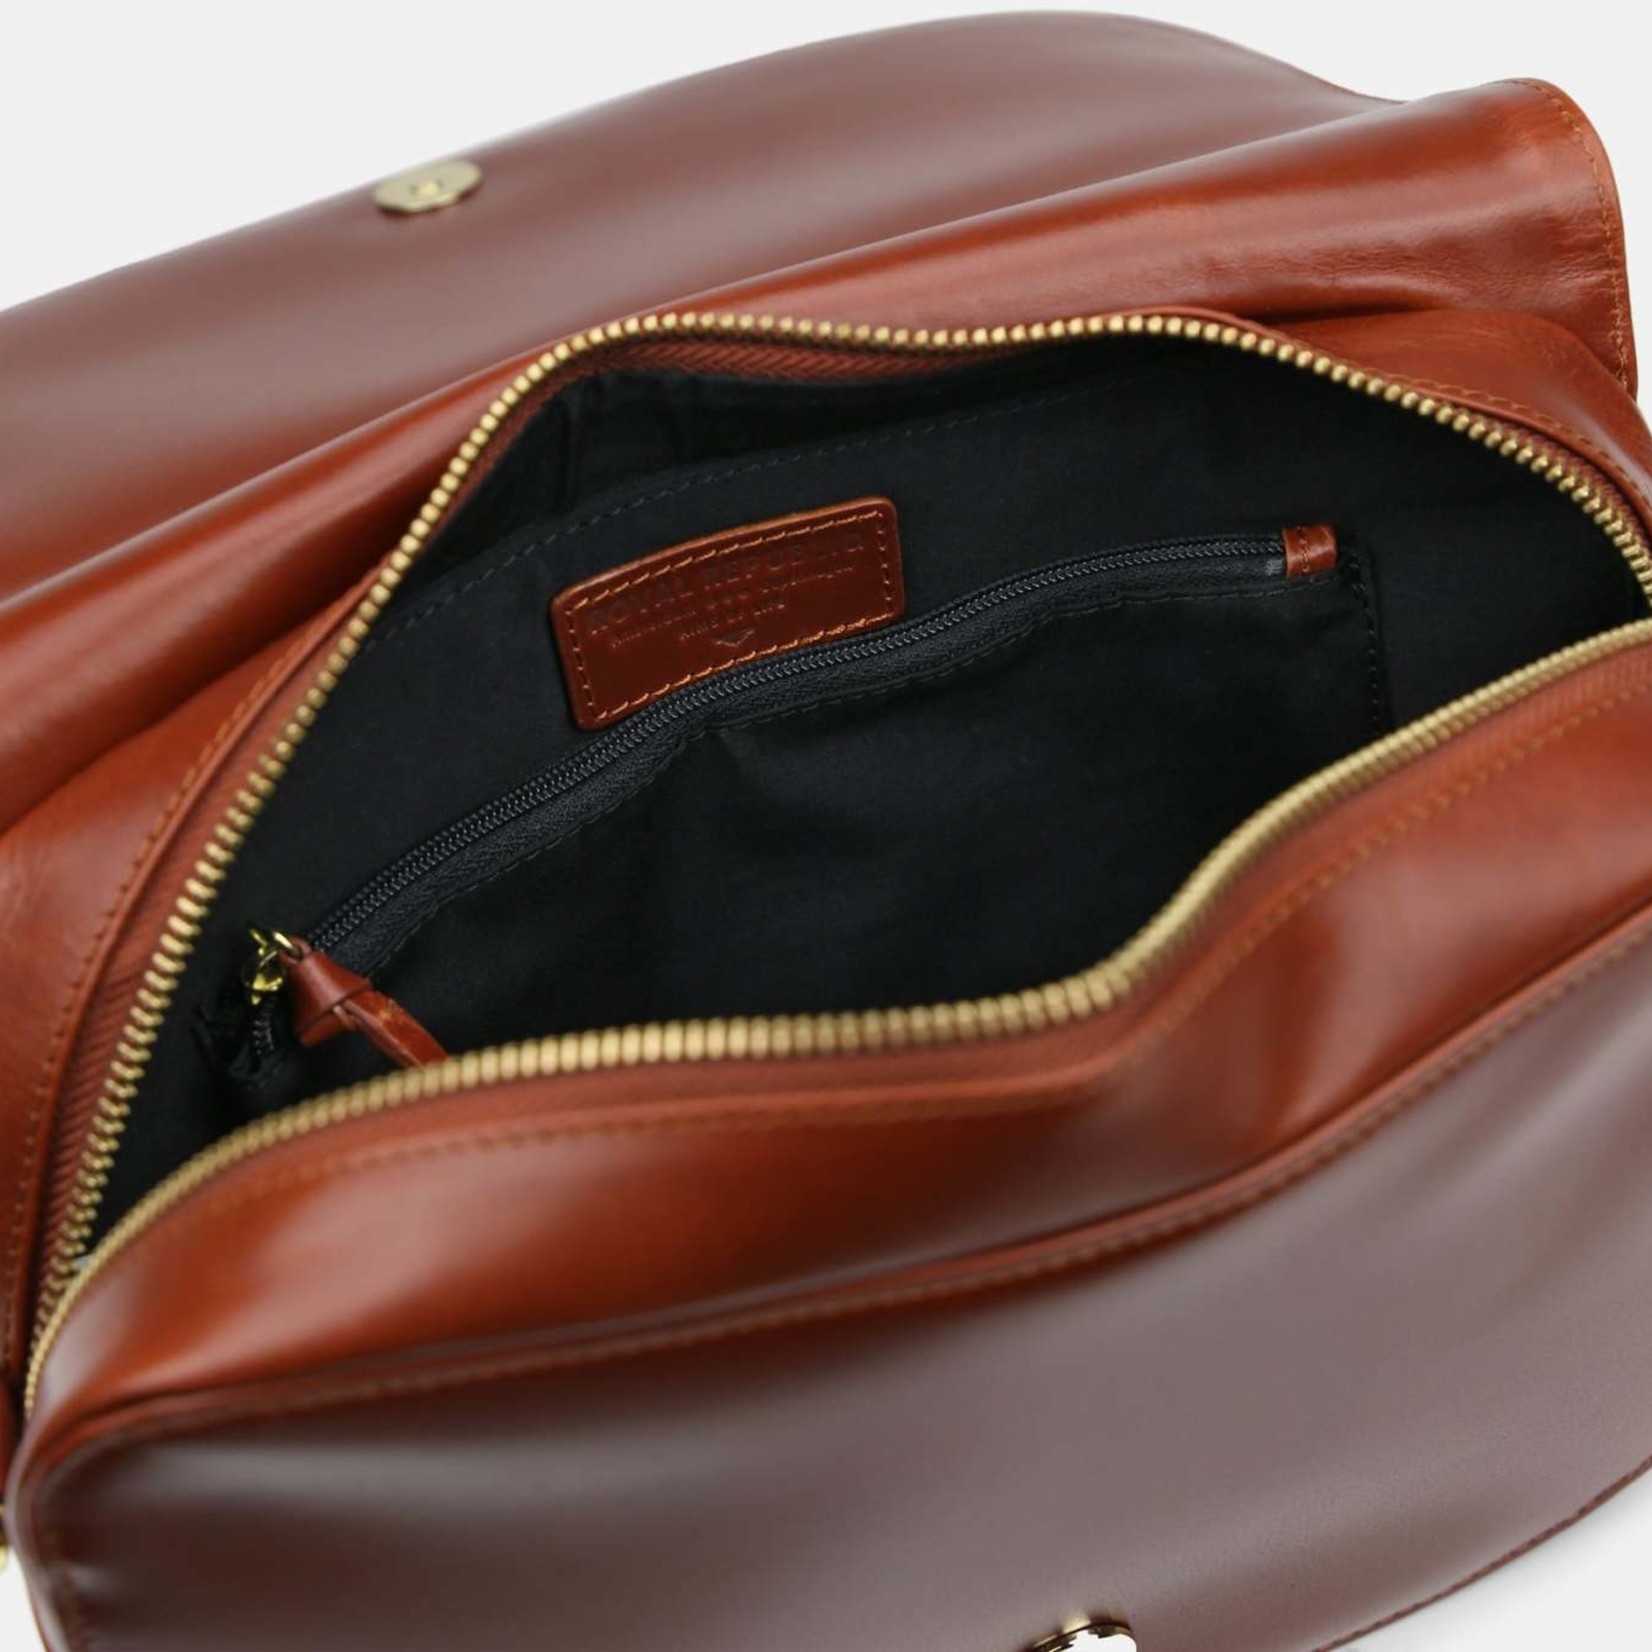 Royal Republiq Raf Curve Handbag cognac